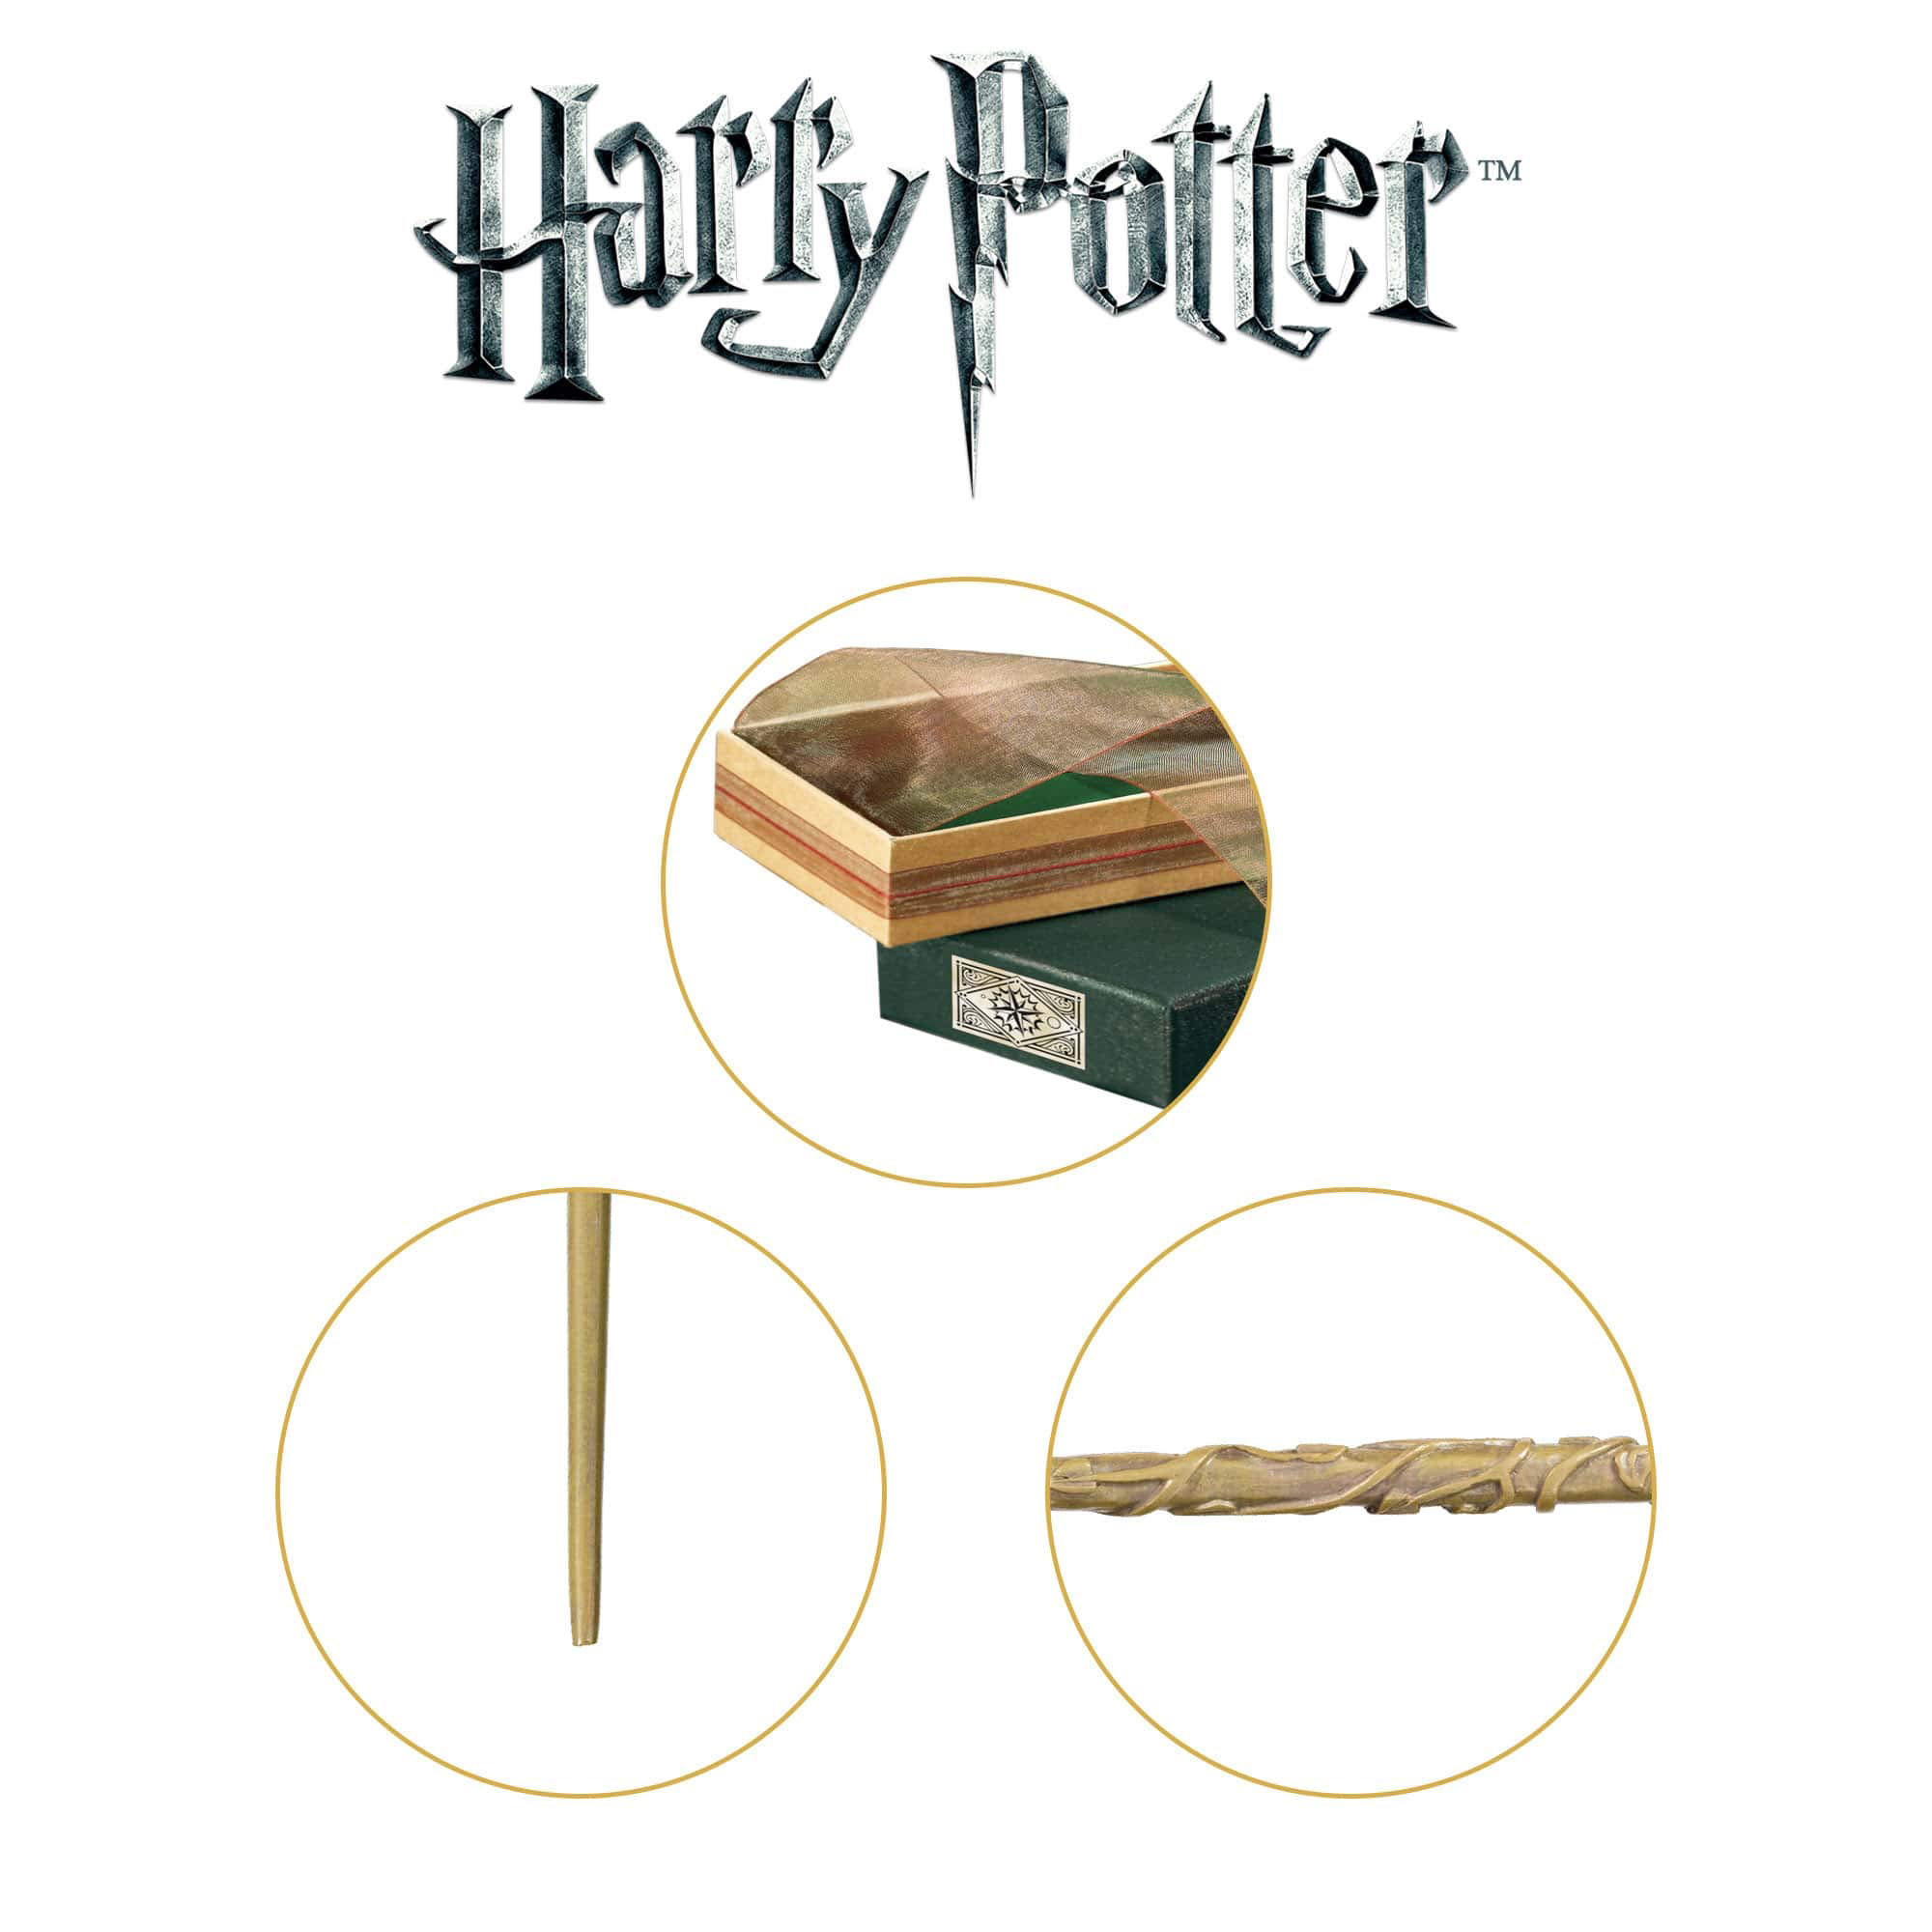 CreArt Serie E Harry Potter Hermione, Giochi artistici e creativi, Ravensburger